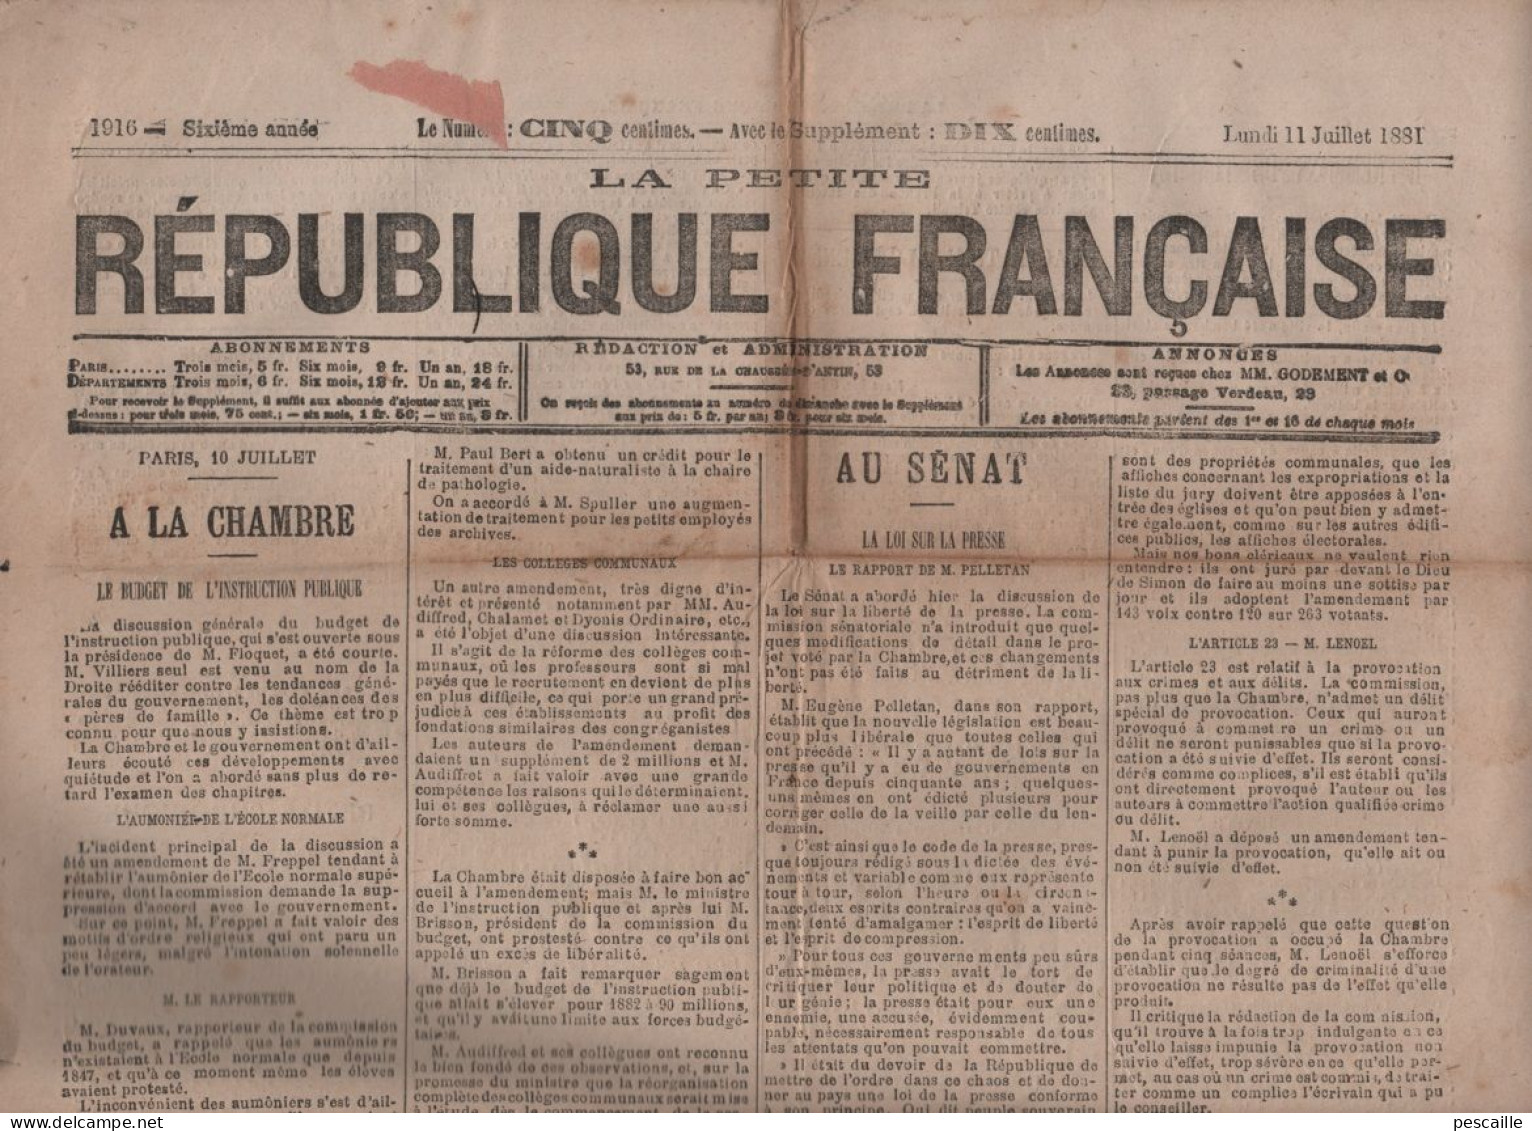 LA PETITE REPUBLIQUE FRANCAISE 11 07 1881 - BUDGET INSTRUCTION PUBLIQUE - LOI SUR LA PRESSE - TUNISIE - ALGERIE - ROANNE - 1850 - 1899